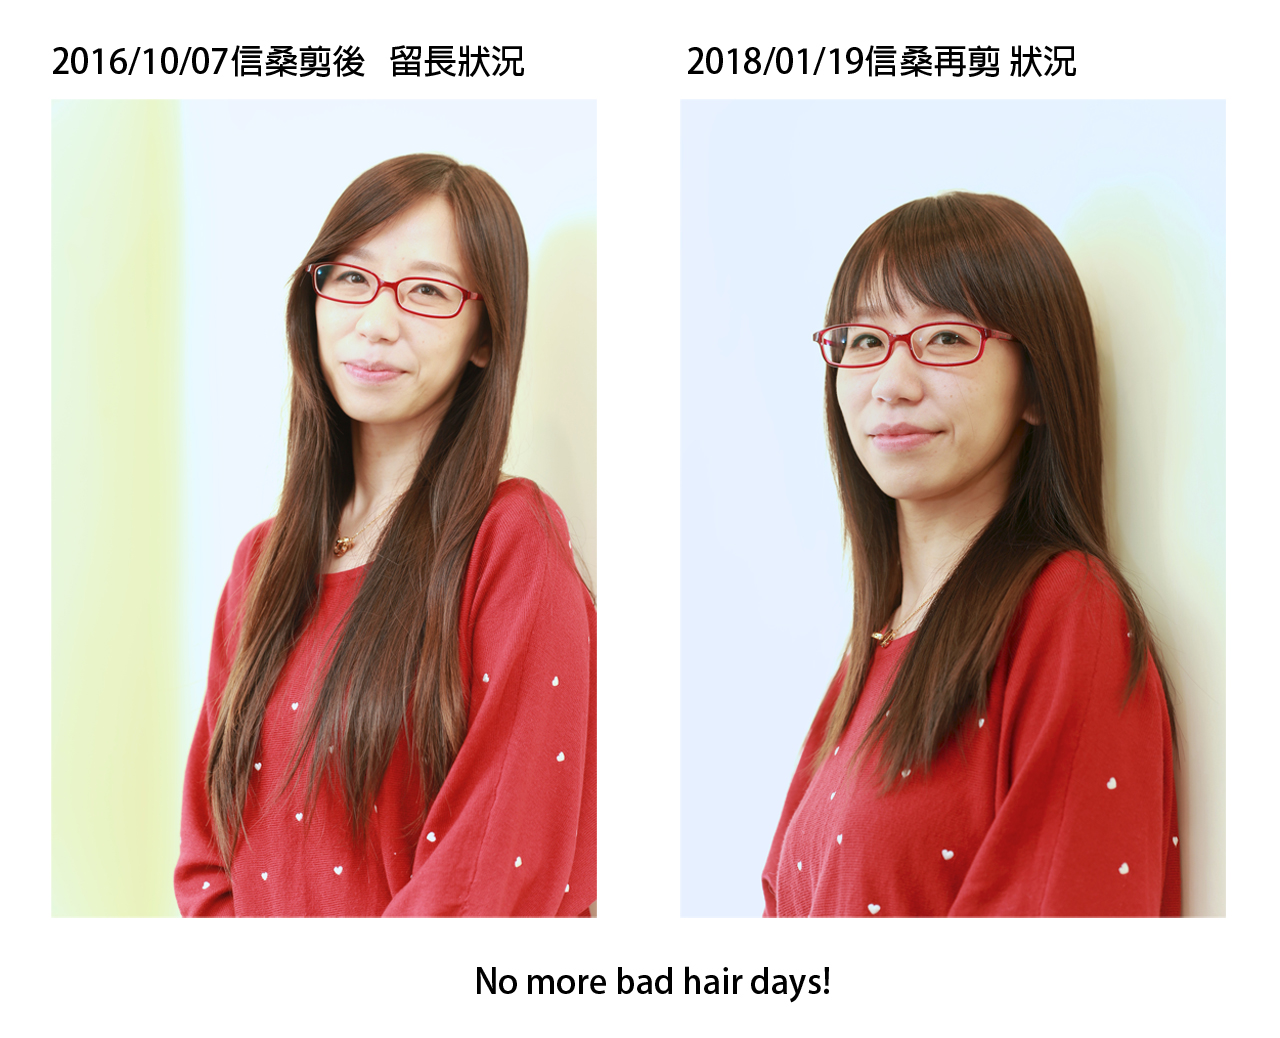 20180119張小姐剪髮前後左側面組圖1